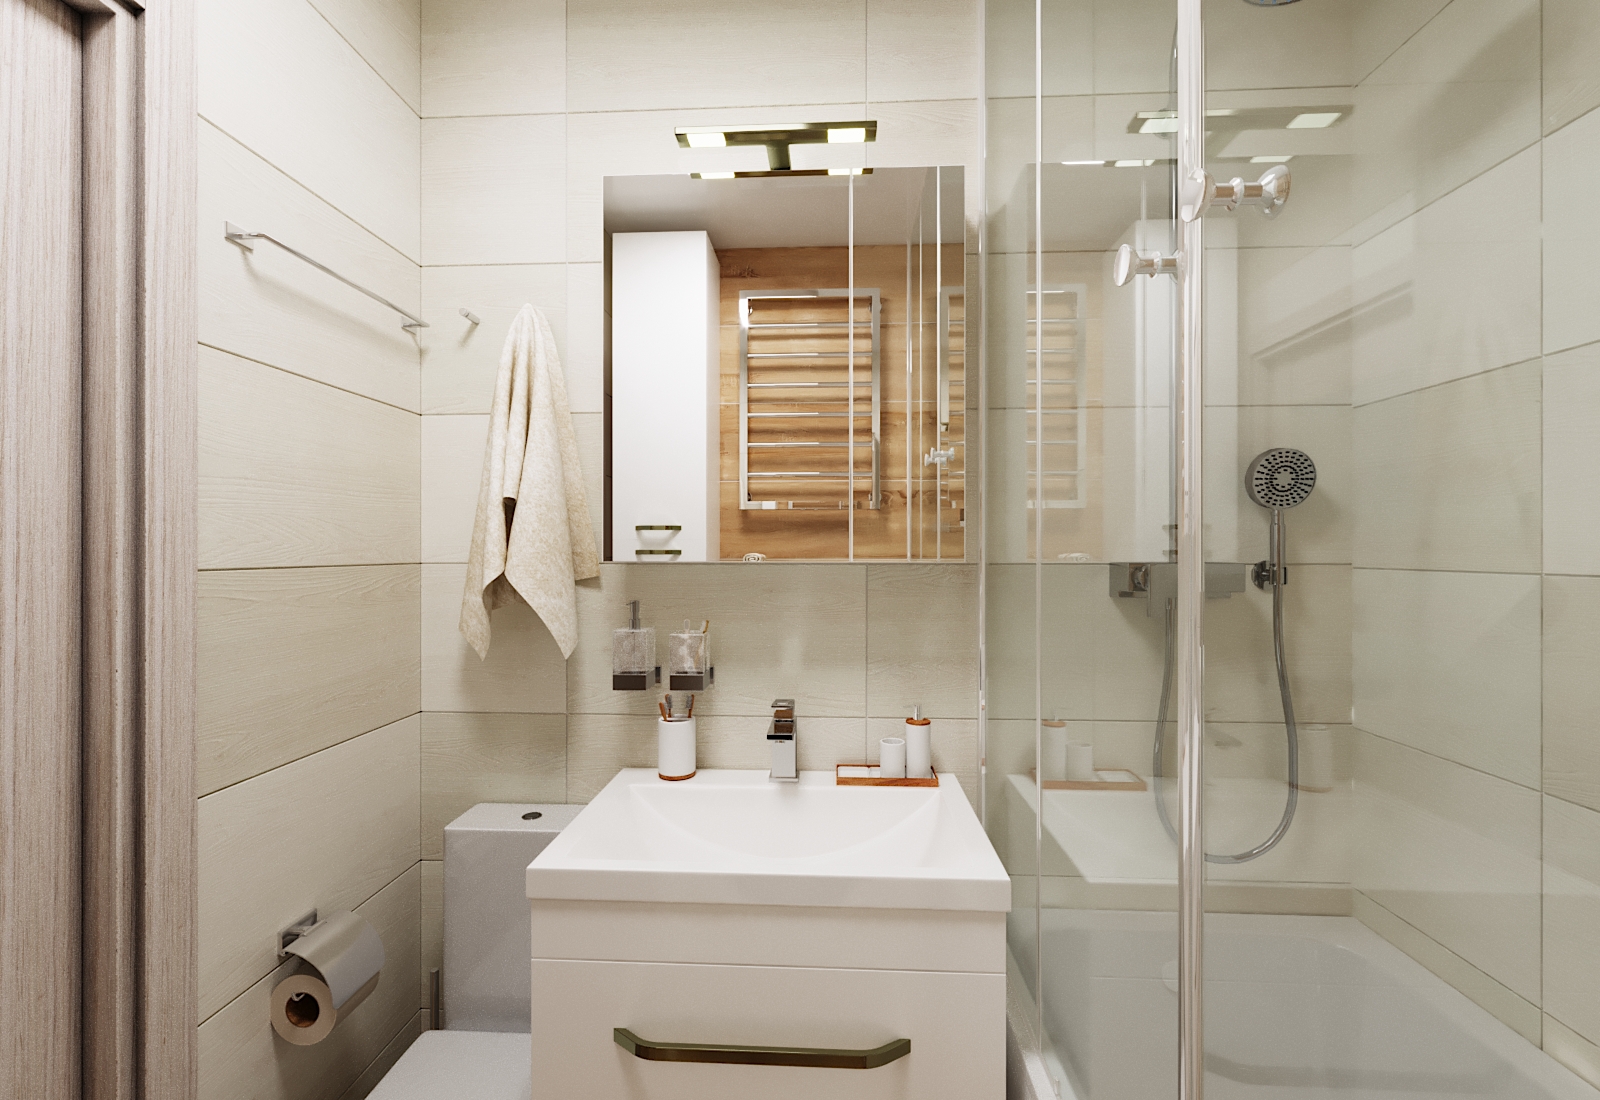 छोटा बाथरूम 3d max corona render में प्रस्तुत छवि